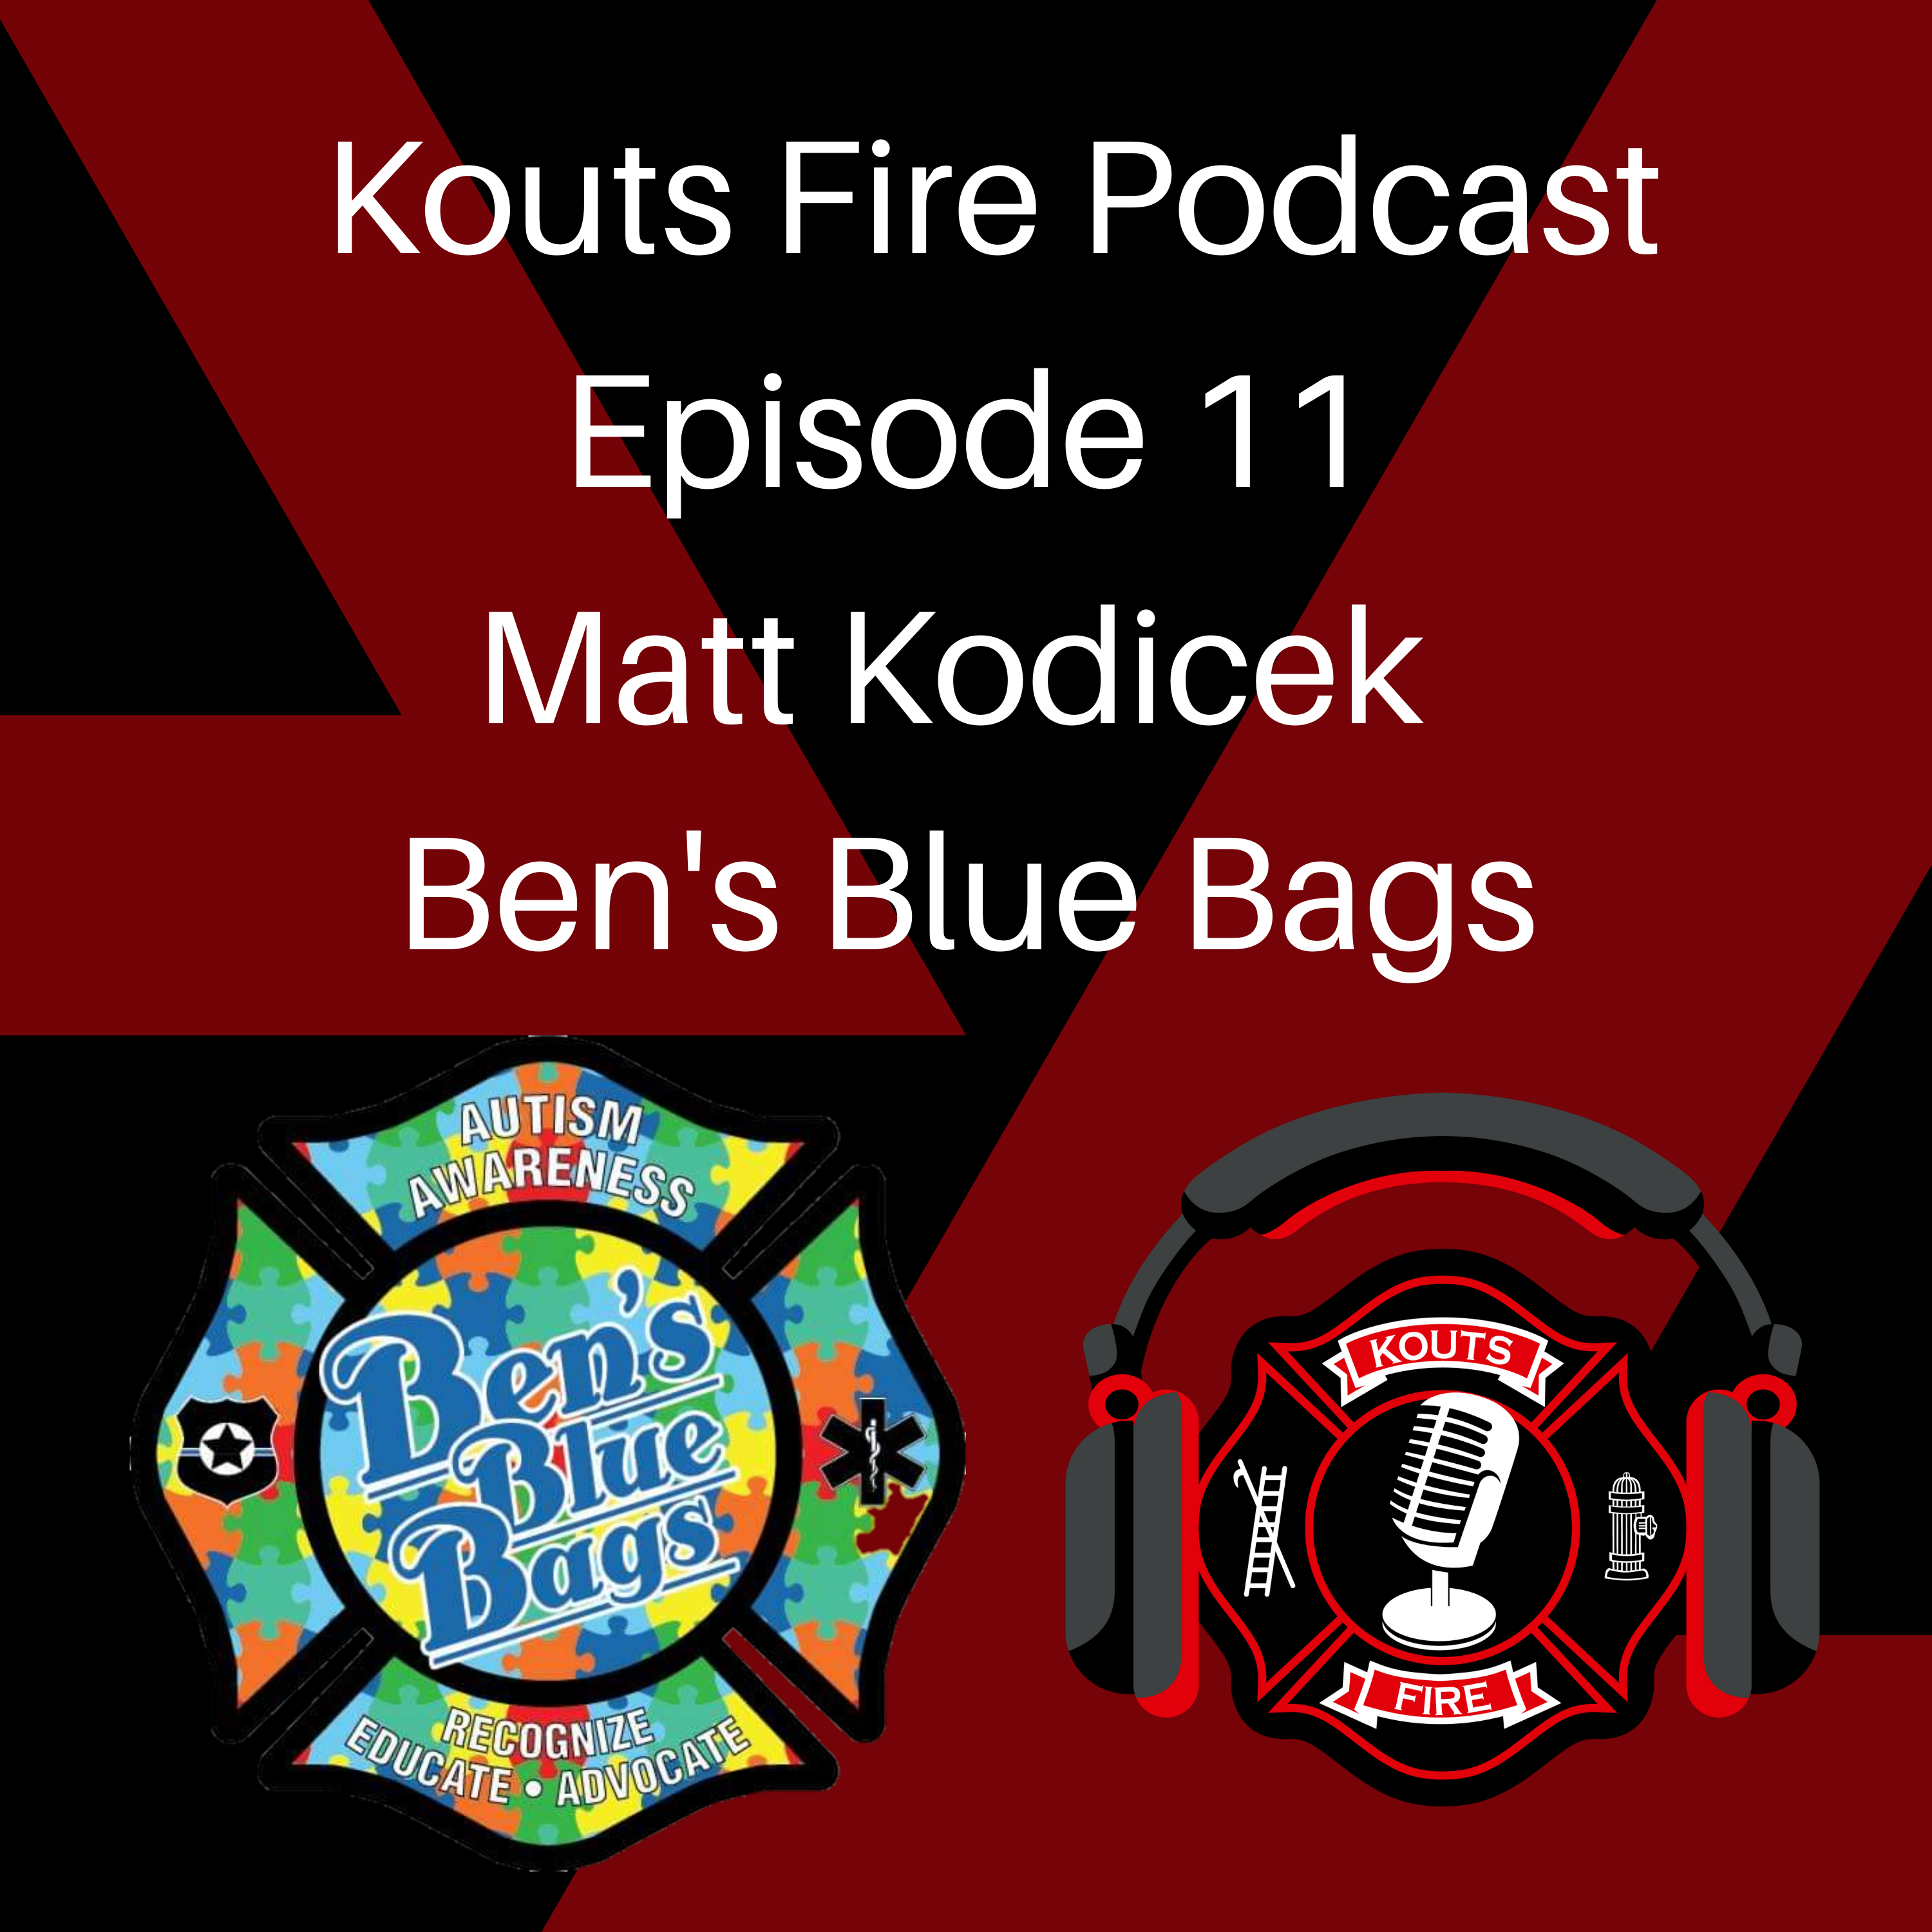 Ben’s Blue Bags – Matt Kodicek